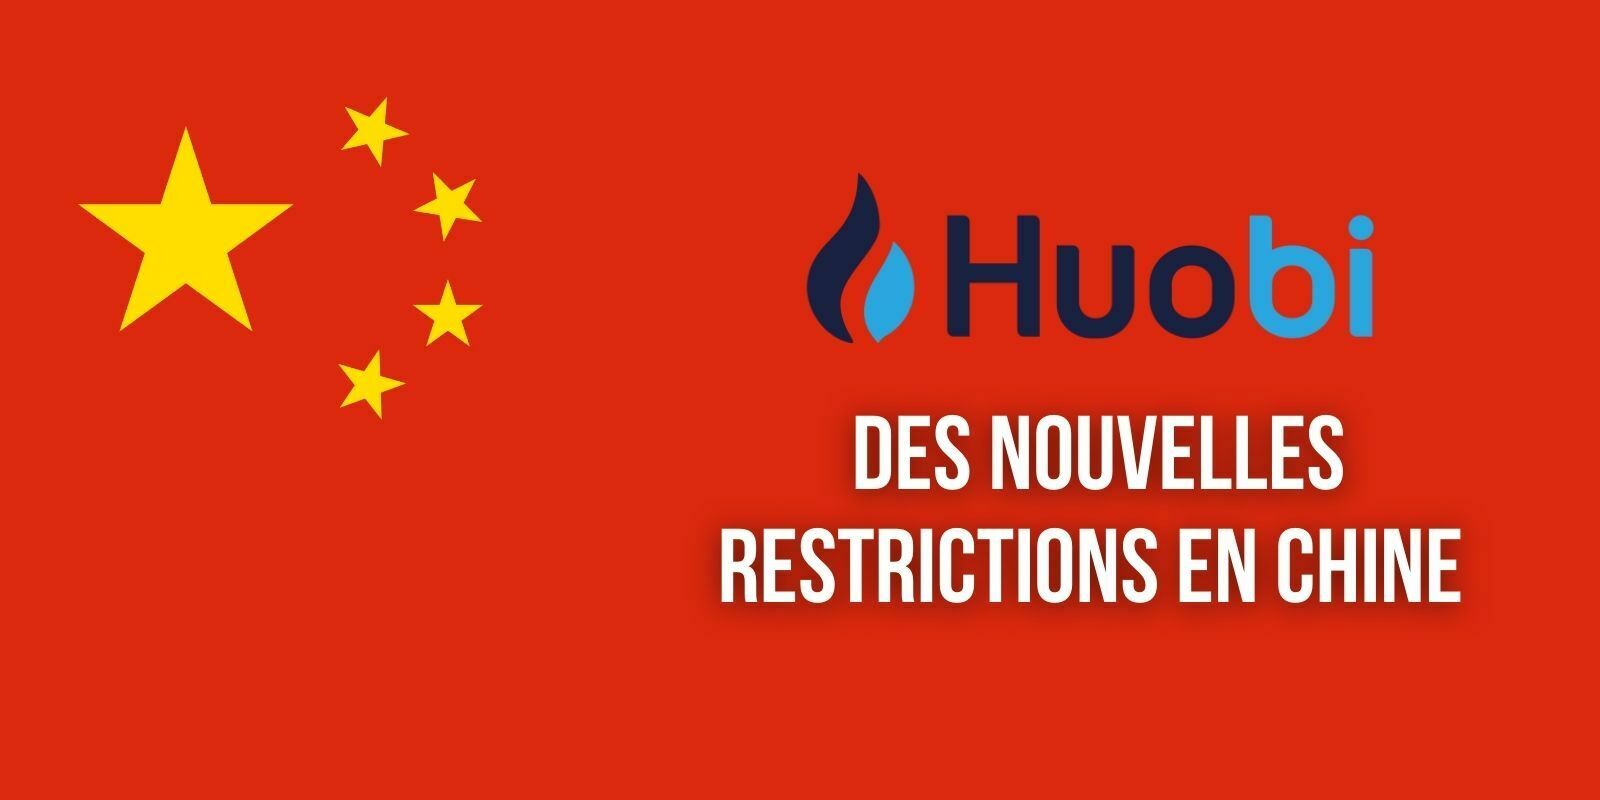 La plateforme Huobi interdit aux résidents chinois de négocier des produits dérivés